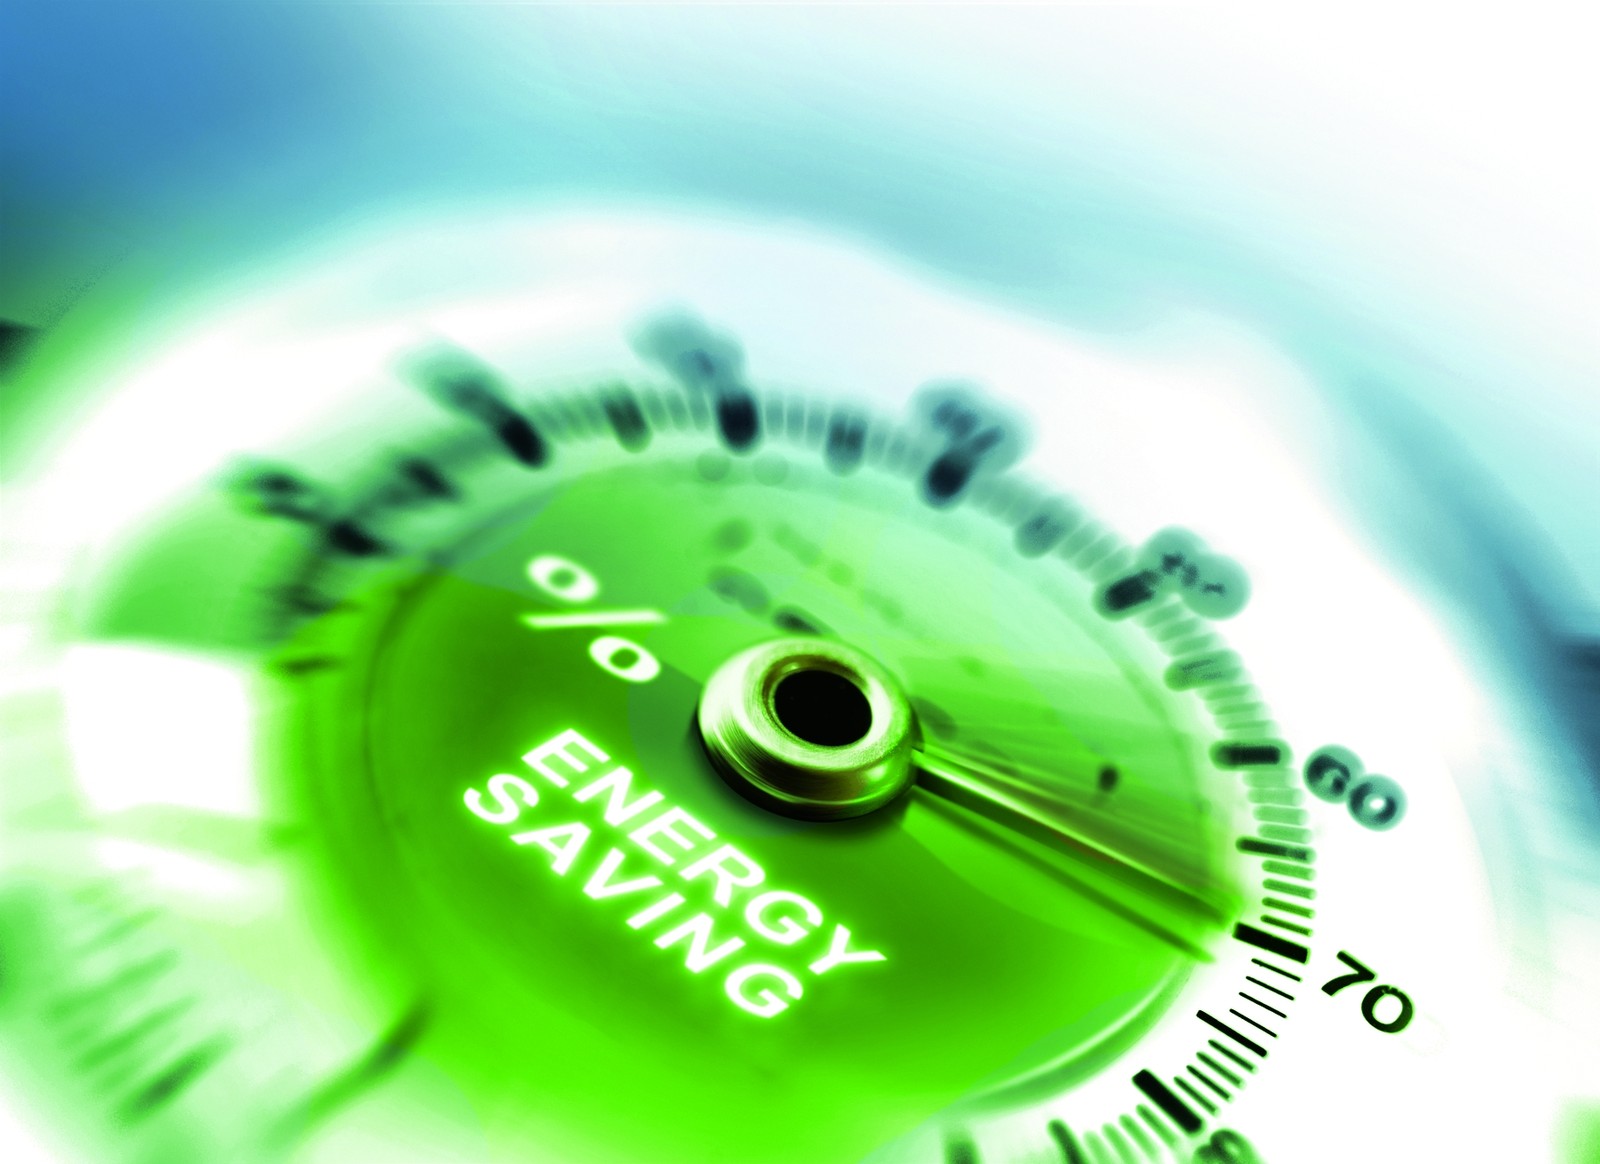 Bosch Rexroth hat energieffiziente Antriebe entwickelt, die für mehr Klimaschutz im Bereich der Hydraulik sorgen.